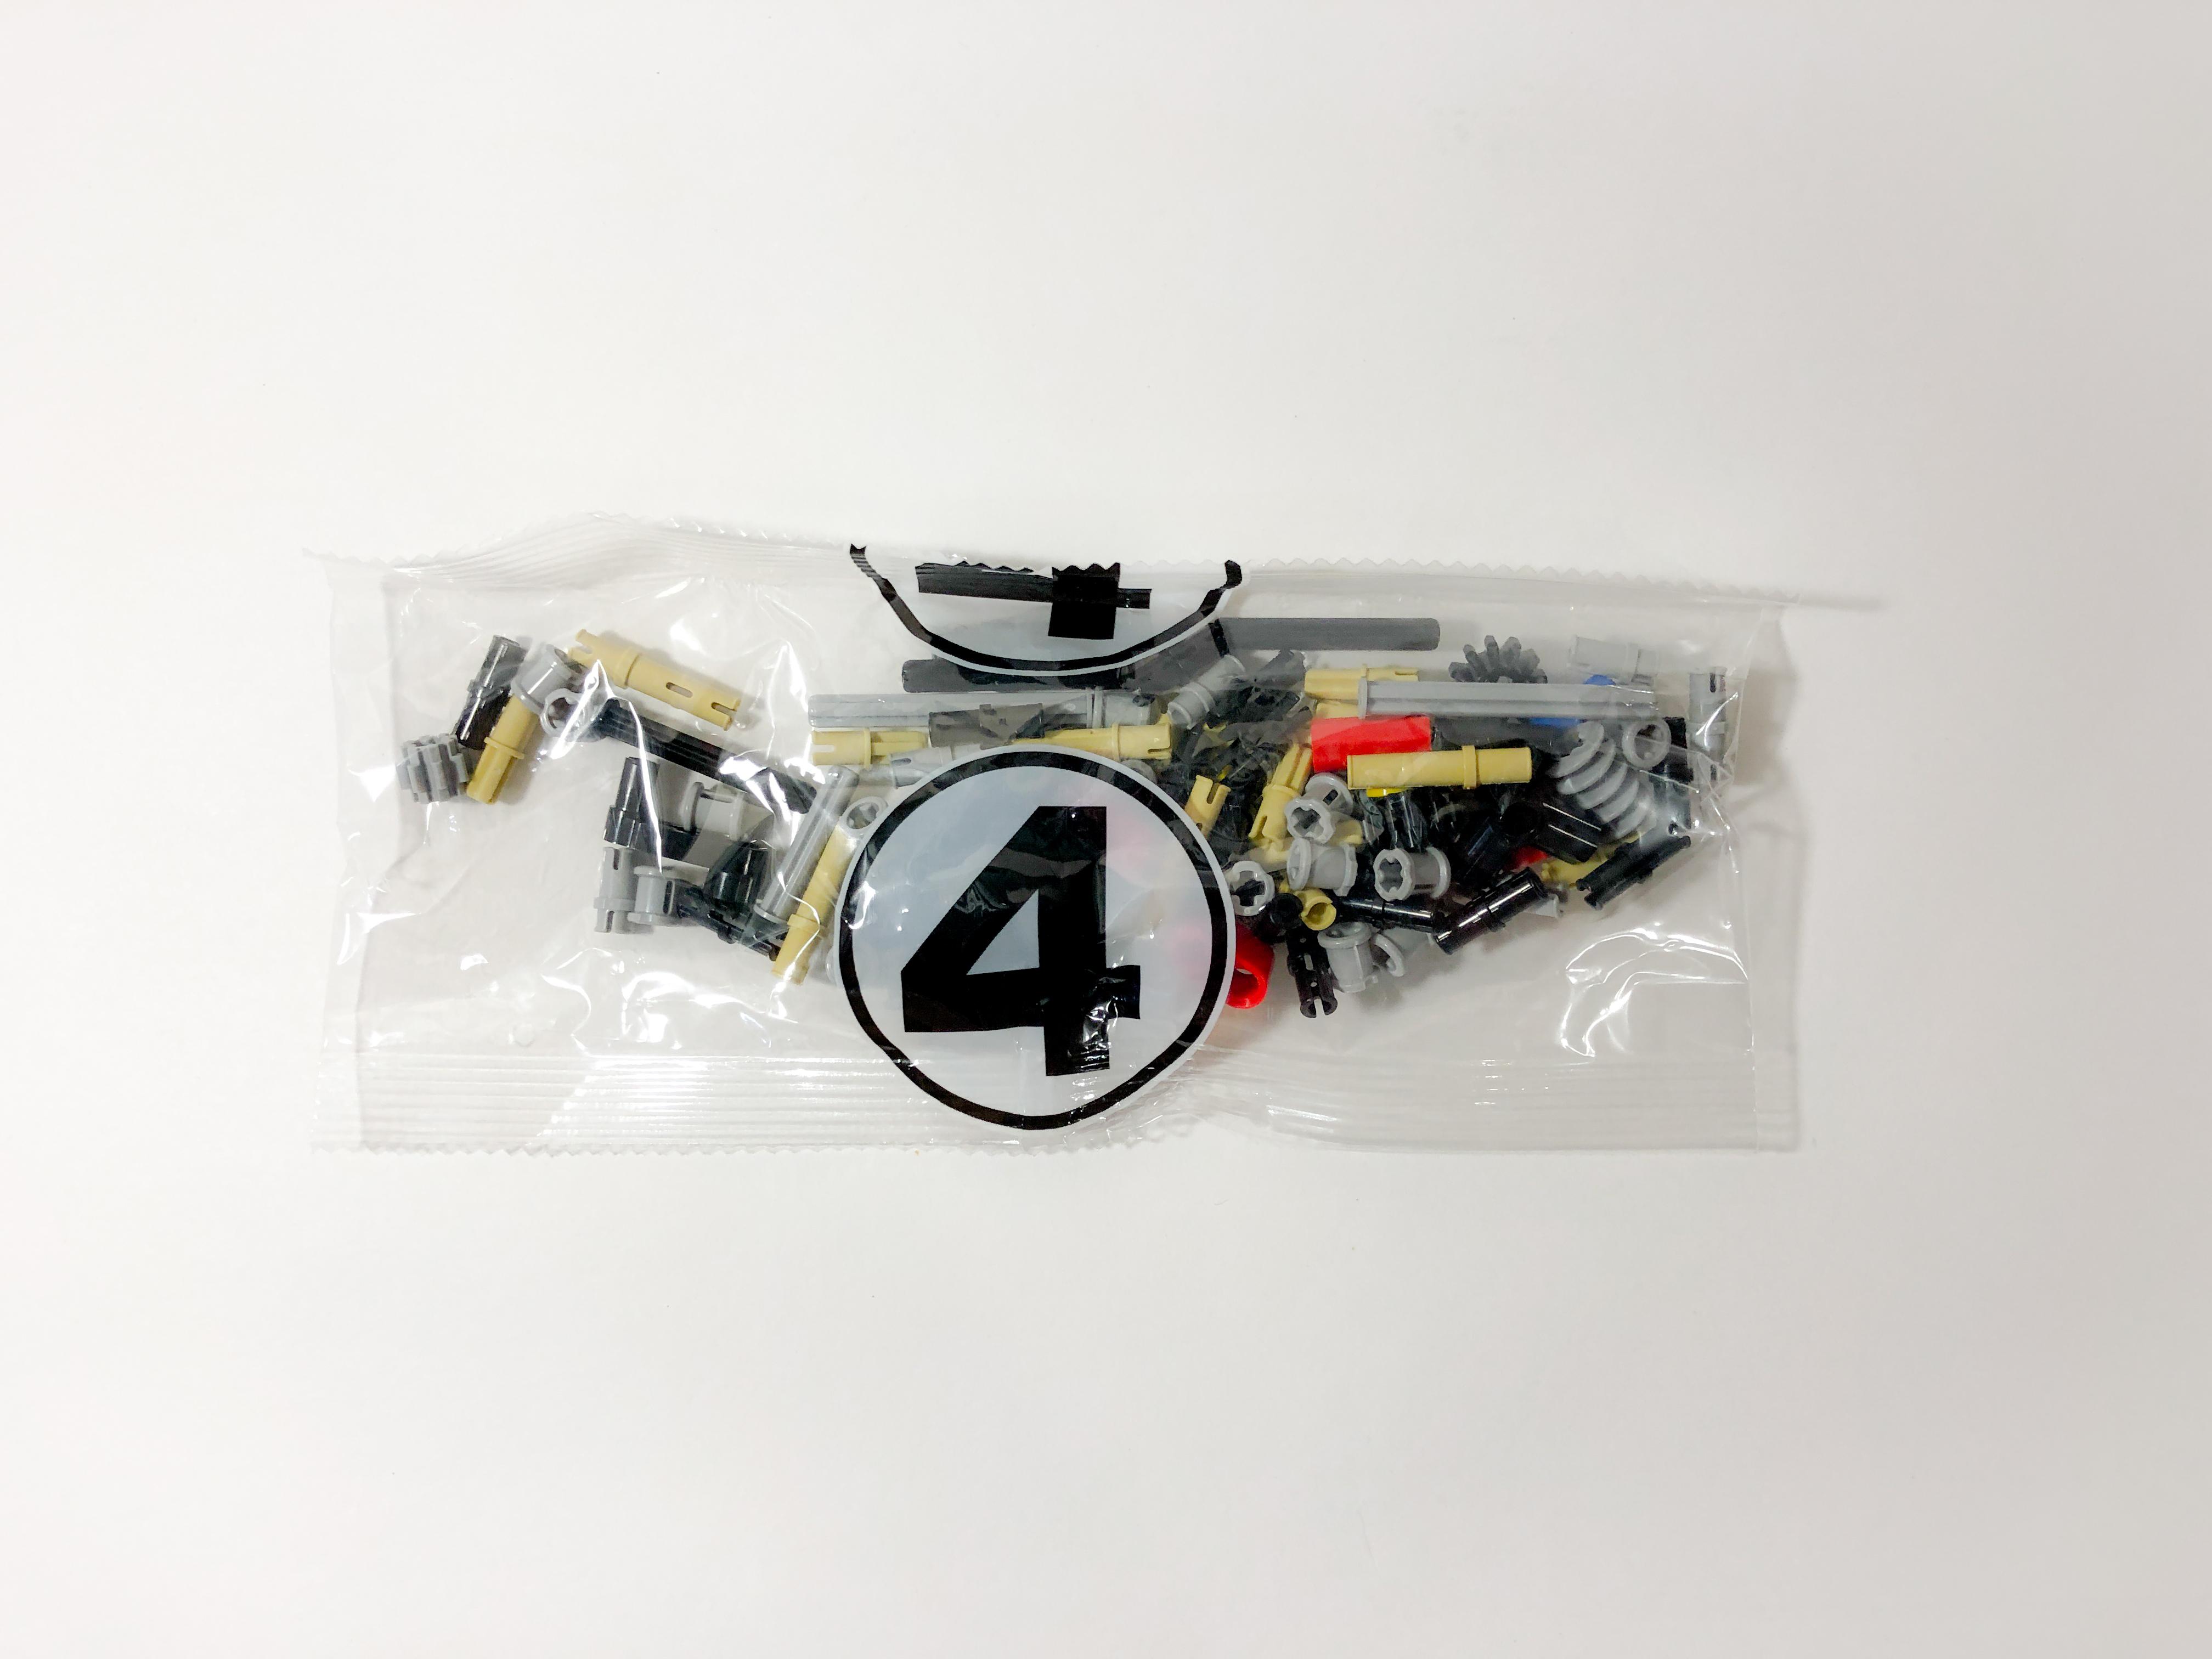 Набор по конструированию и робототехники Crazy Motor Kit (Базовый) арт. mot1